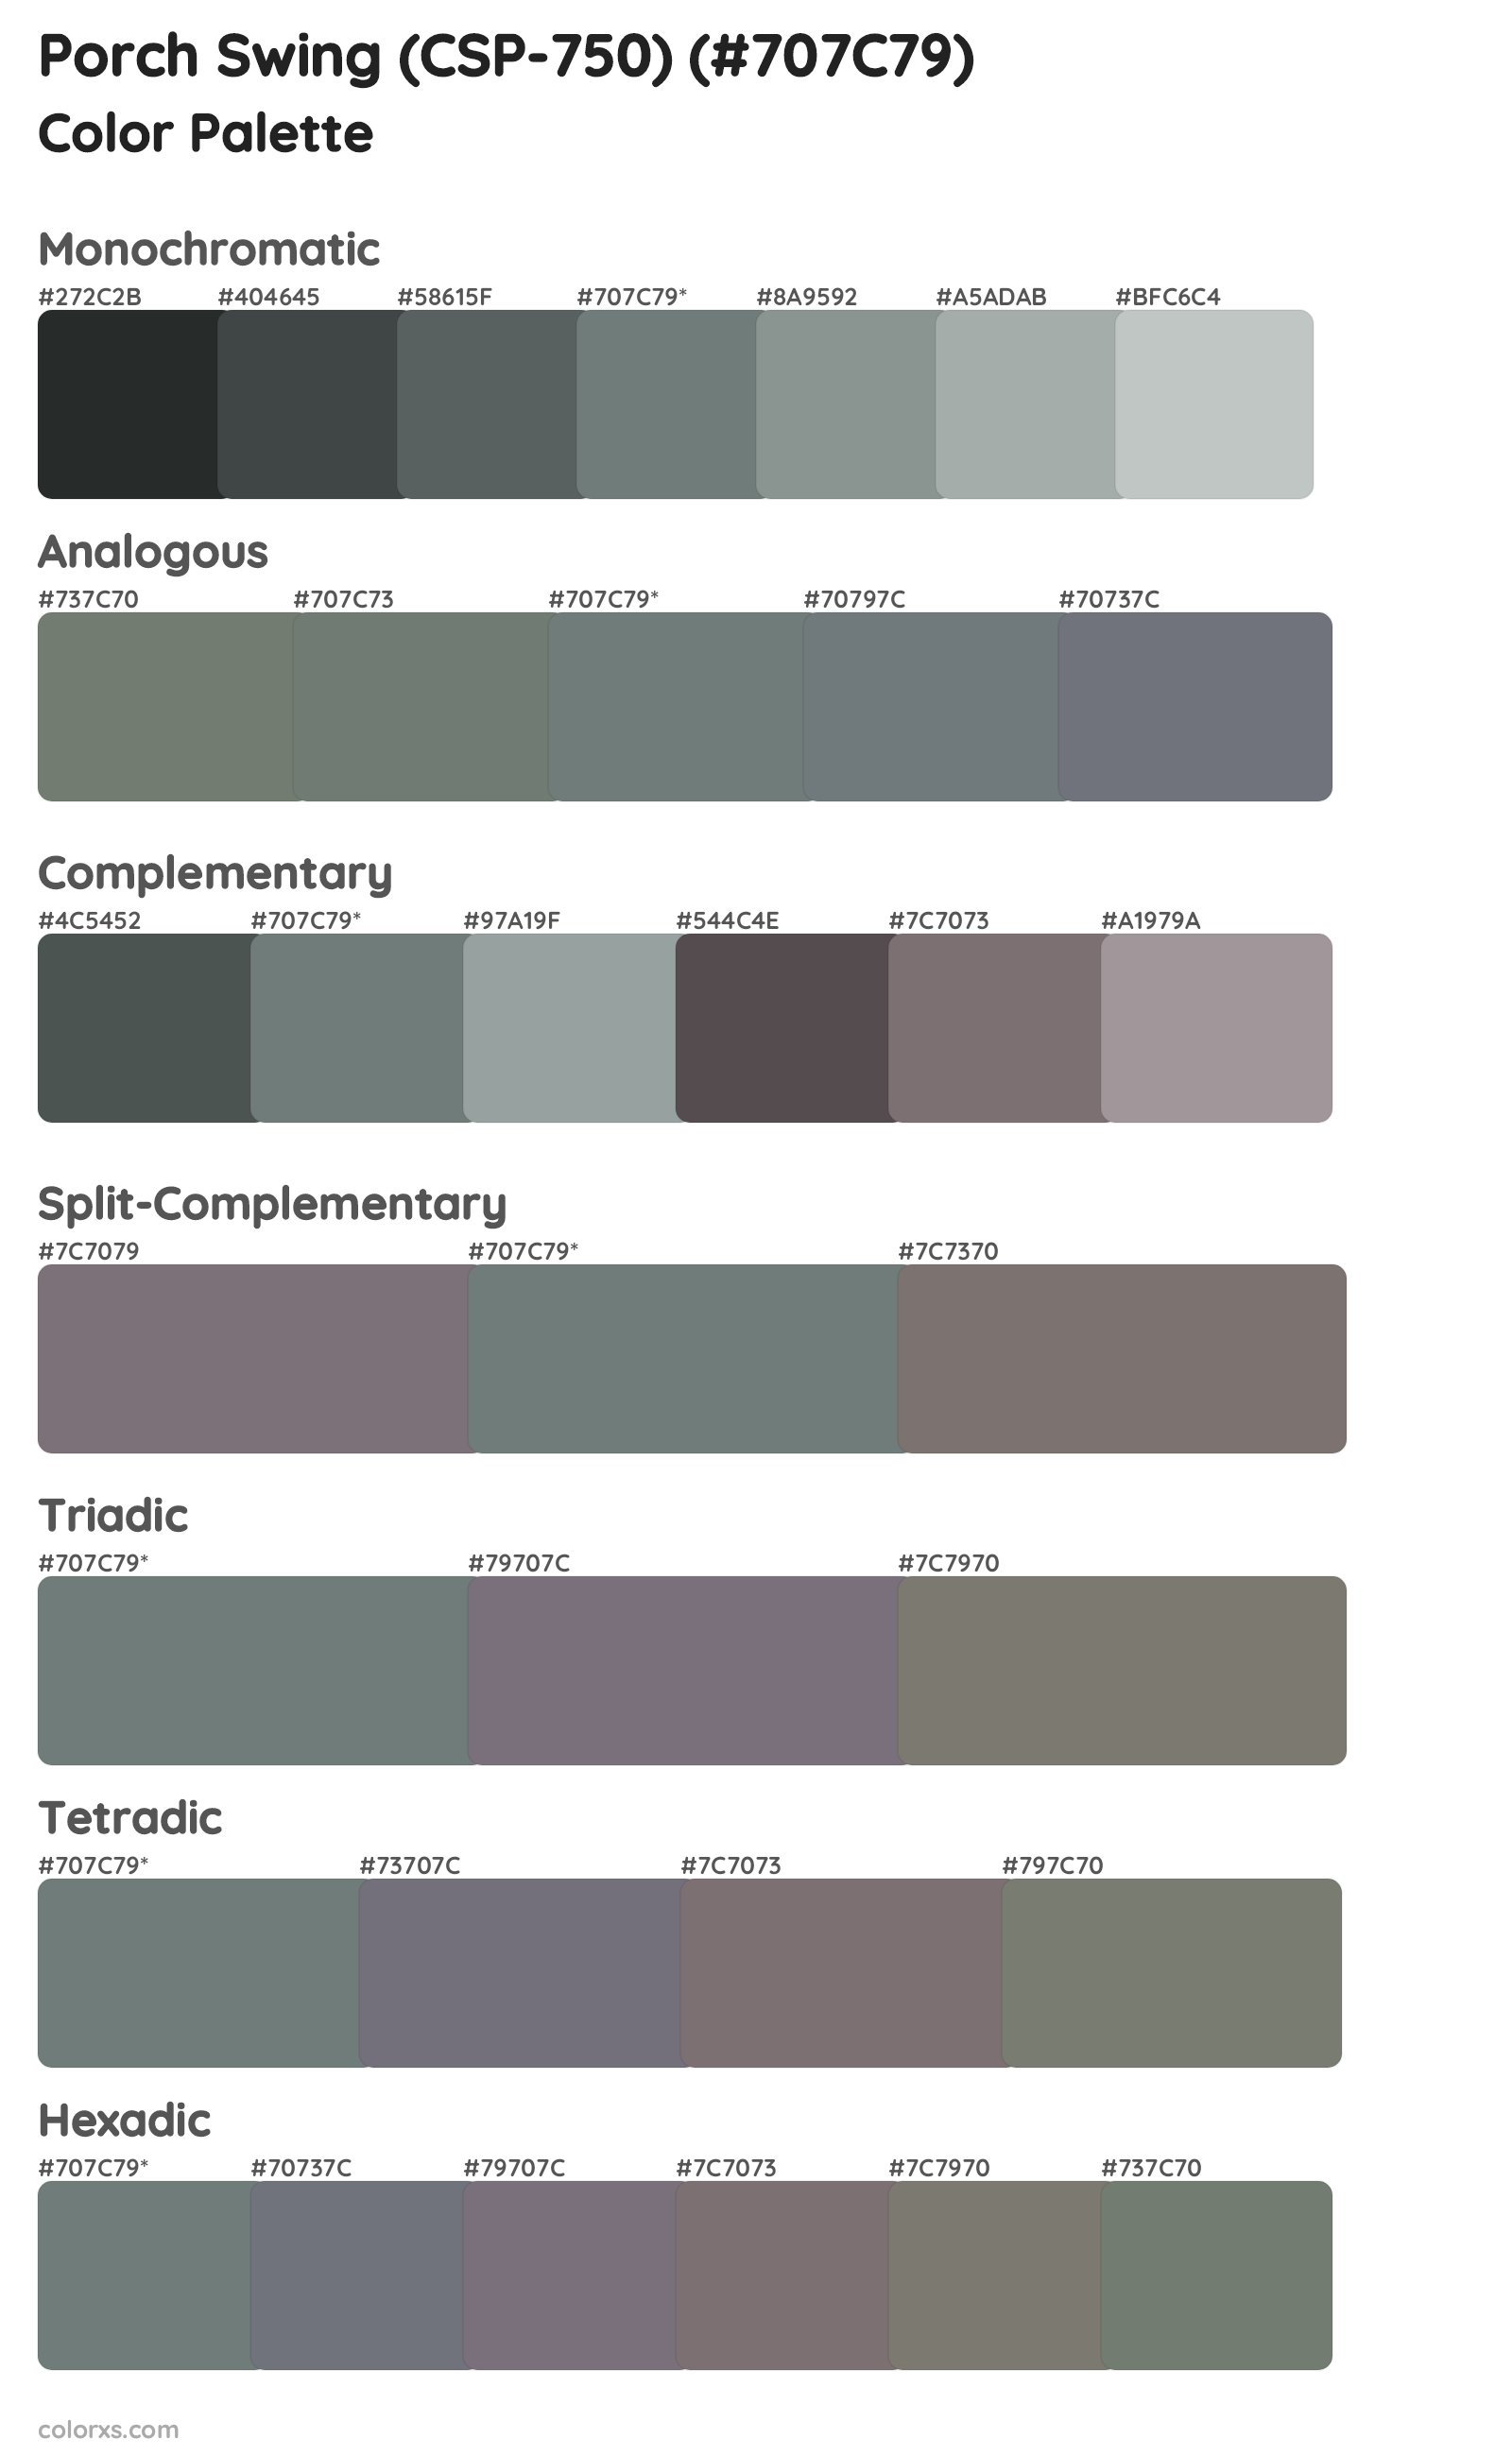 Porch Swing (CSP-750) Color Scheme Palettes